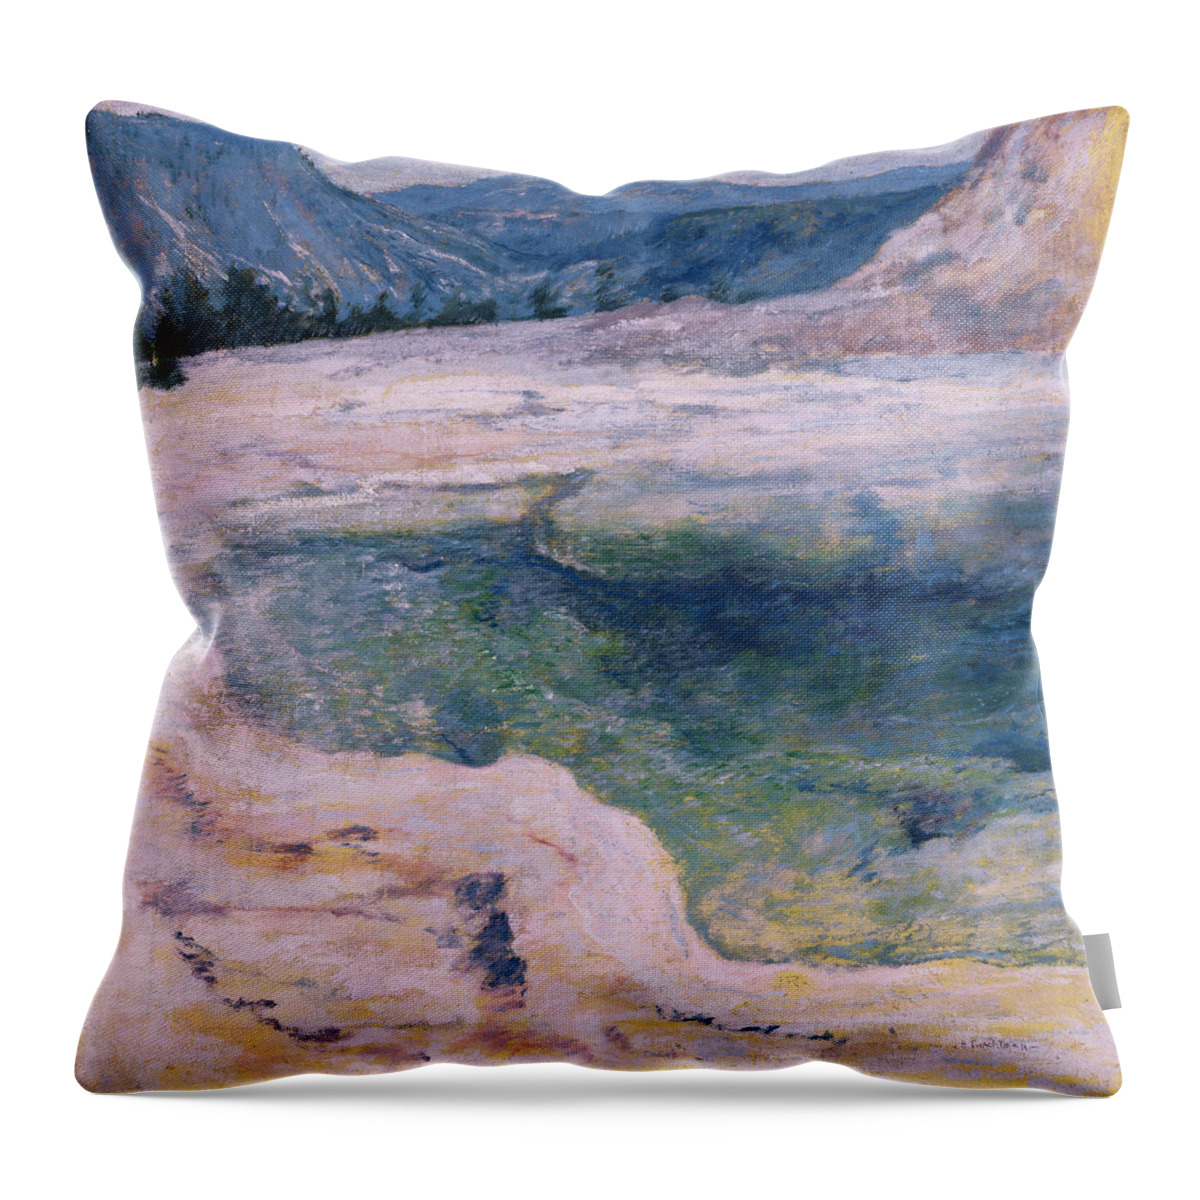 John Henry Twachtman Throw Pillow featuring the painting The Emerald Pool #1 by John Henry Twachtman